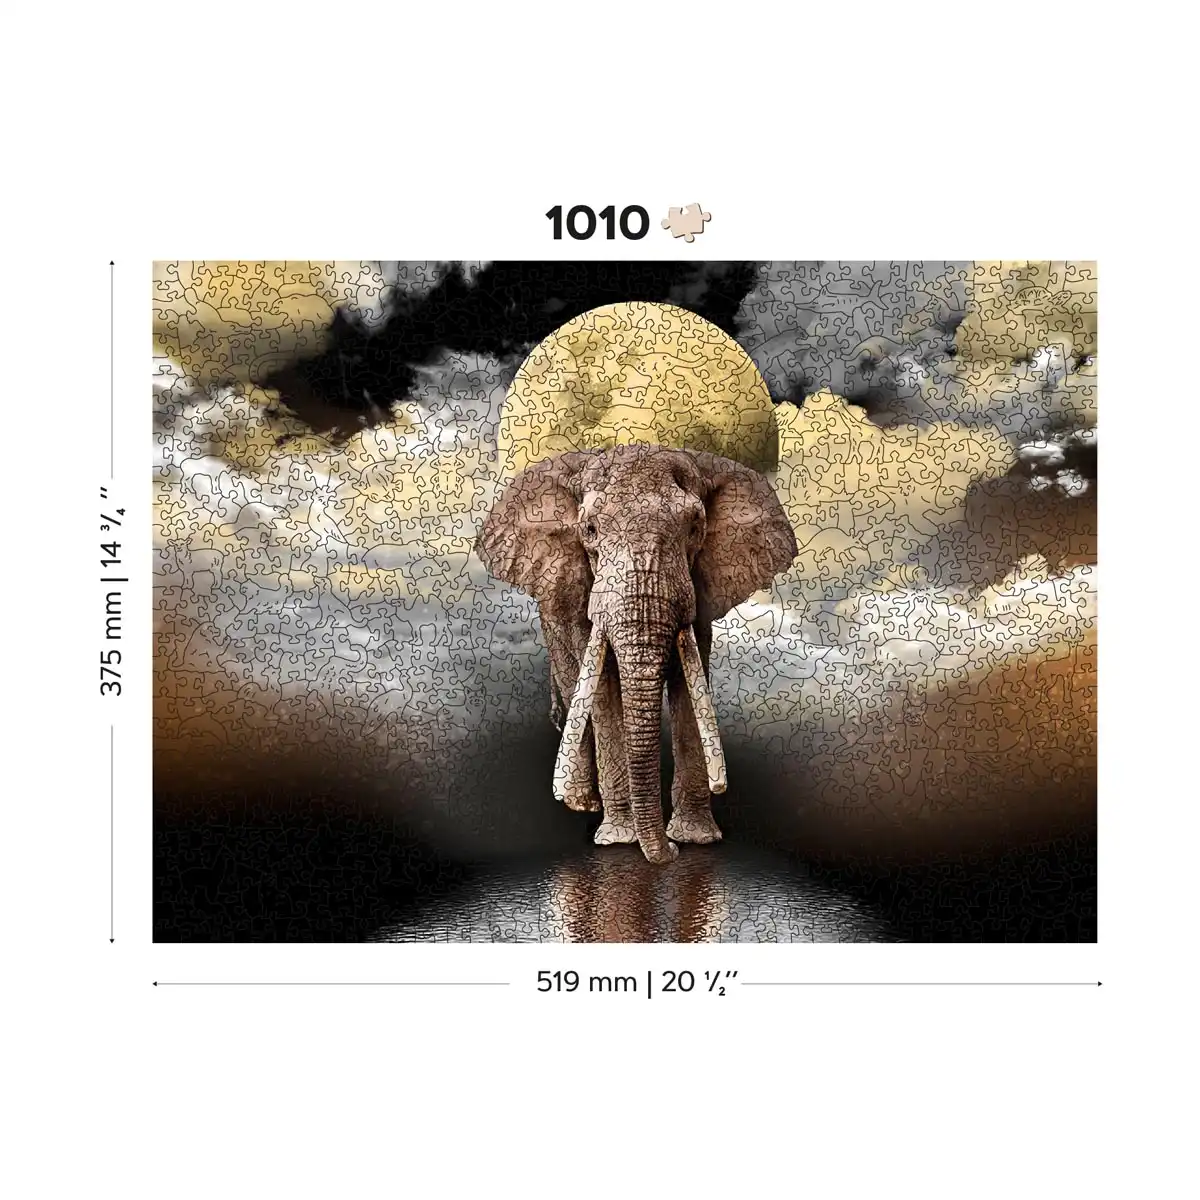 Puzzle Clementoni The Elephant (1000 pièces) à prix bas